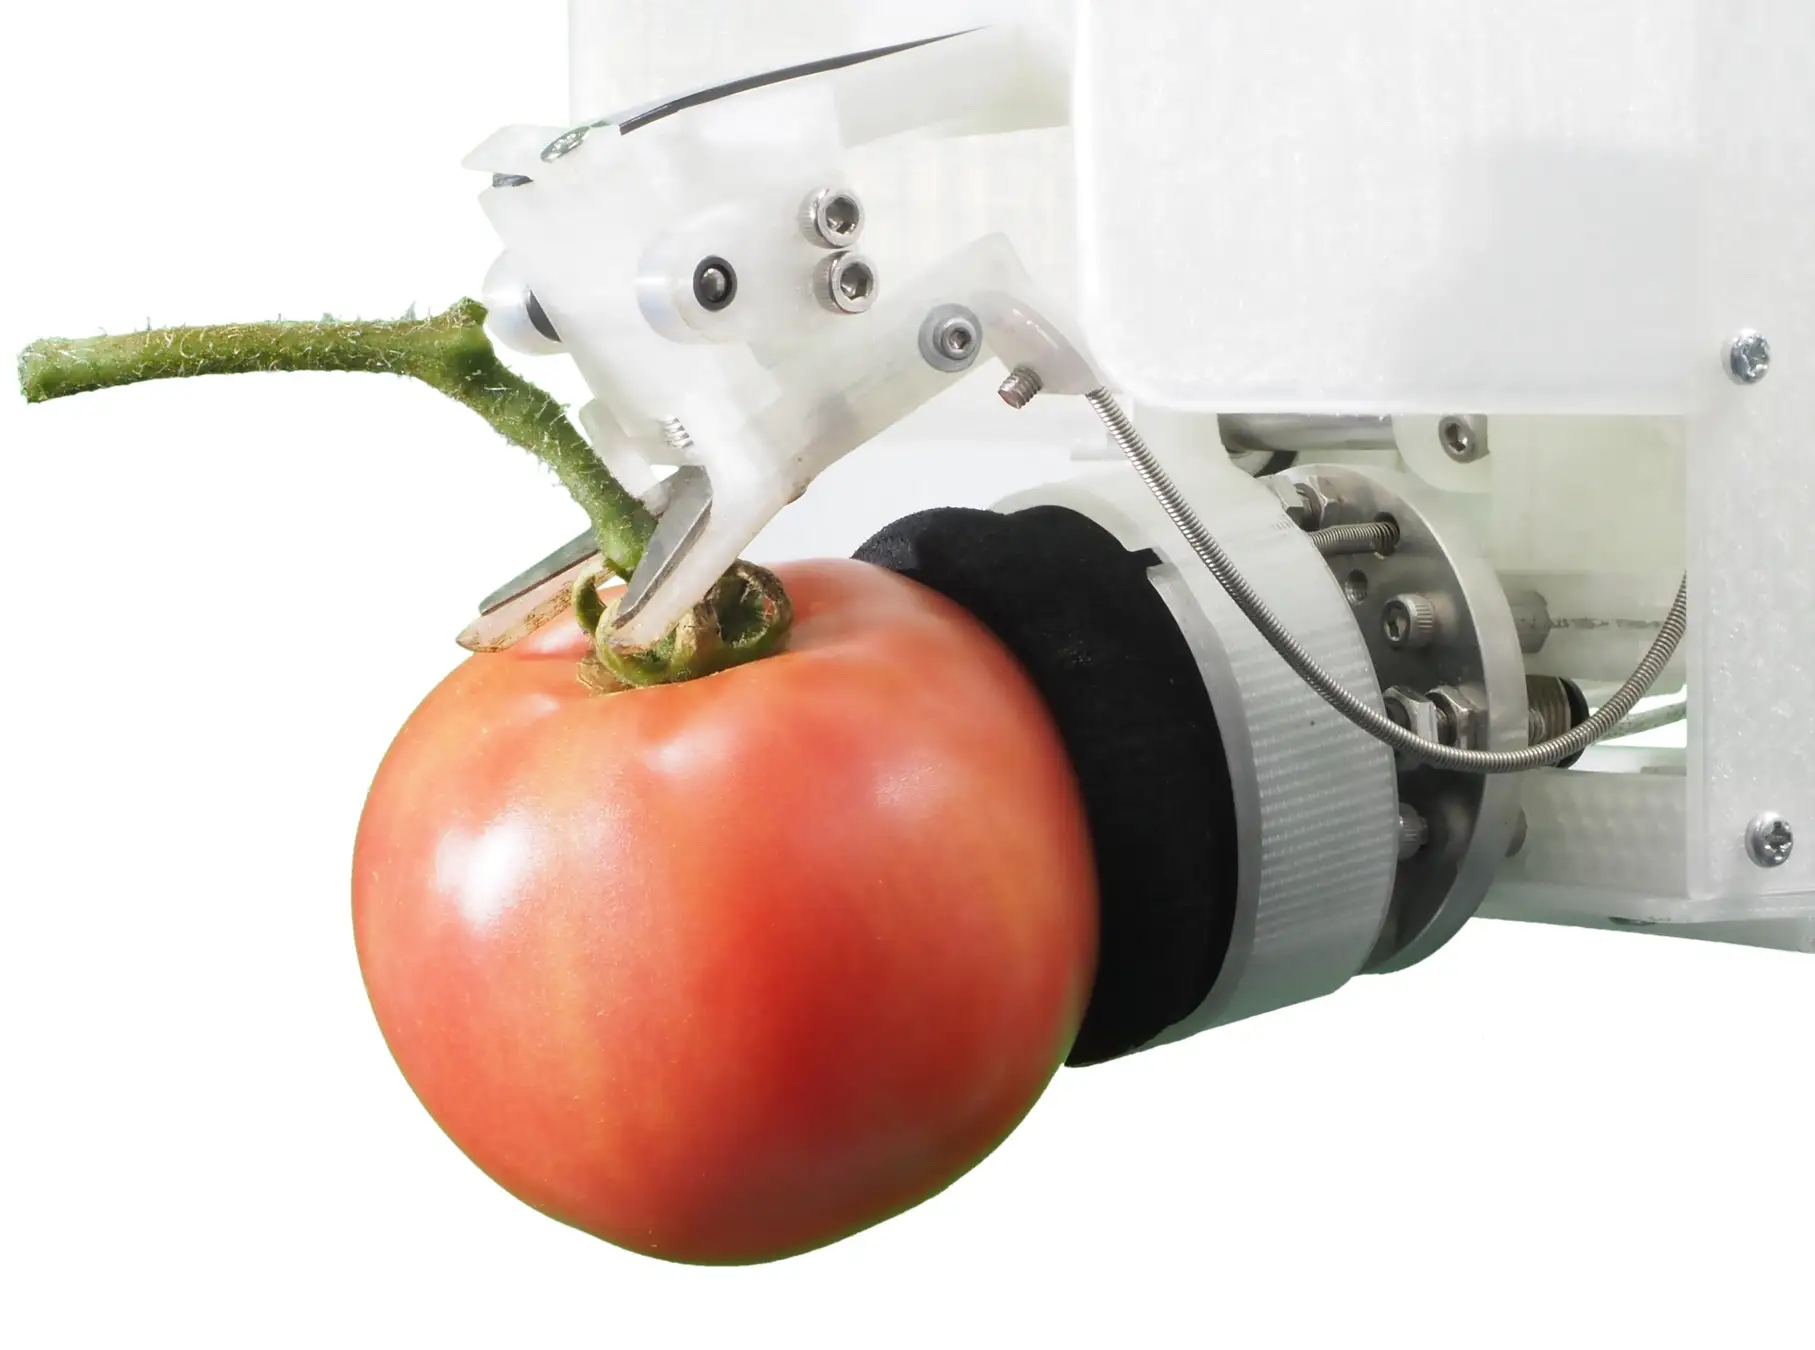 ヤンマー、トマトの自動収穫ロボットの試作機を「2022国際ロボット展」に出展